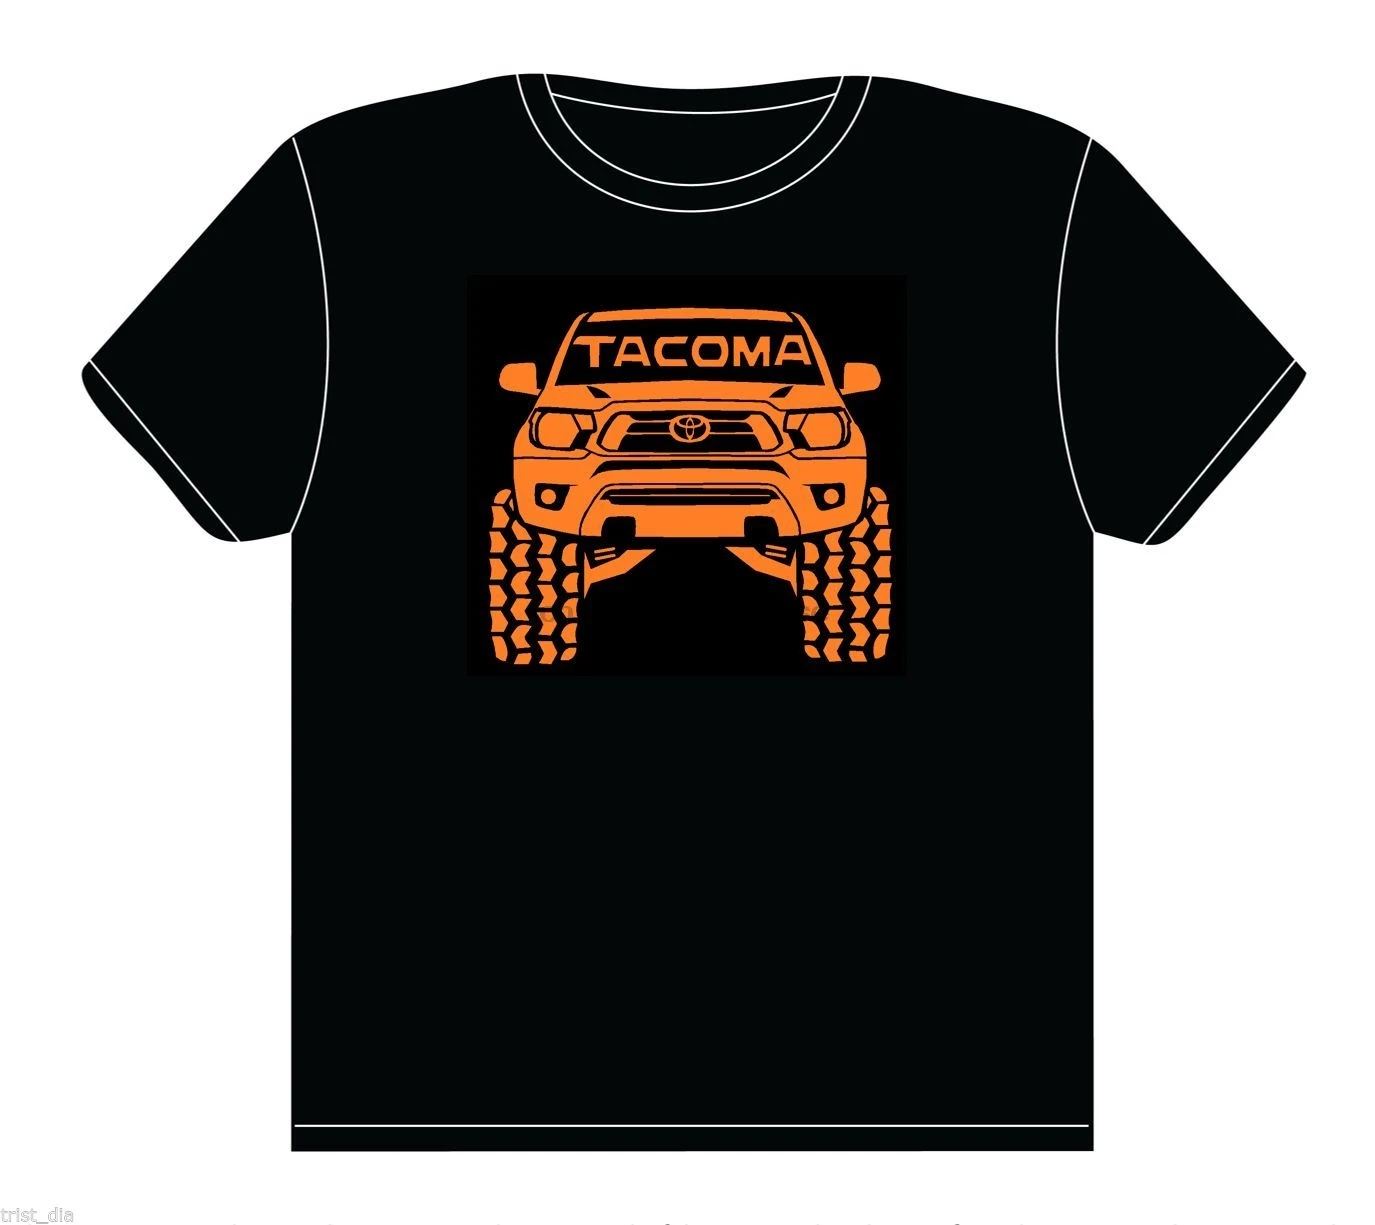 Новинка 2020 мужские футболки s 2015 Мужская футболка Tacoma 4x4 Rock Crawling Off Road 100% хлопок